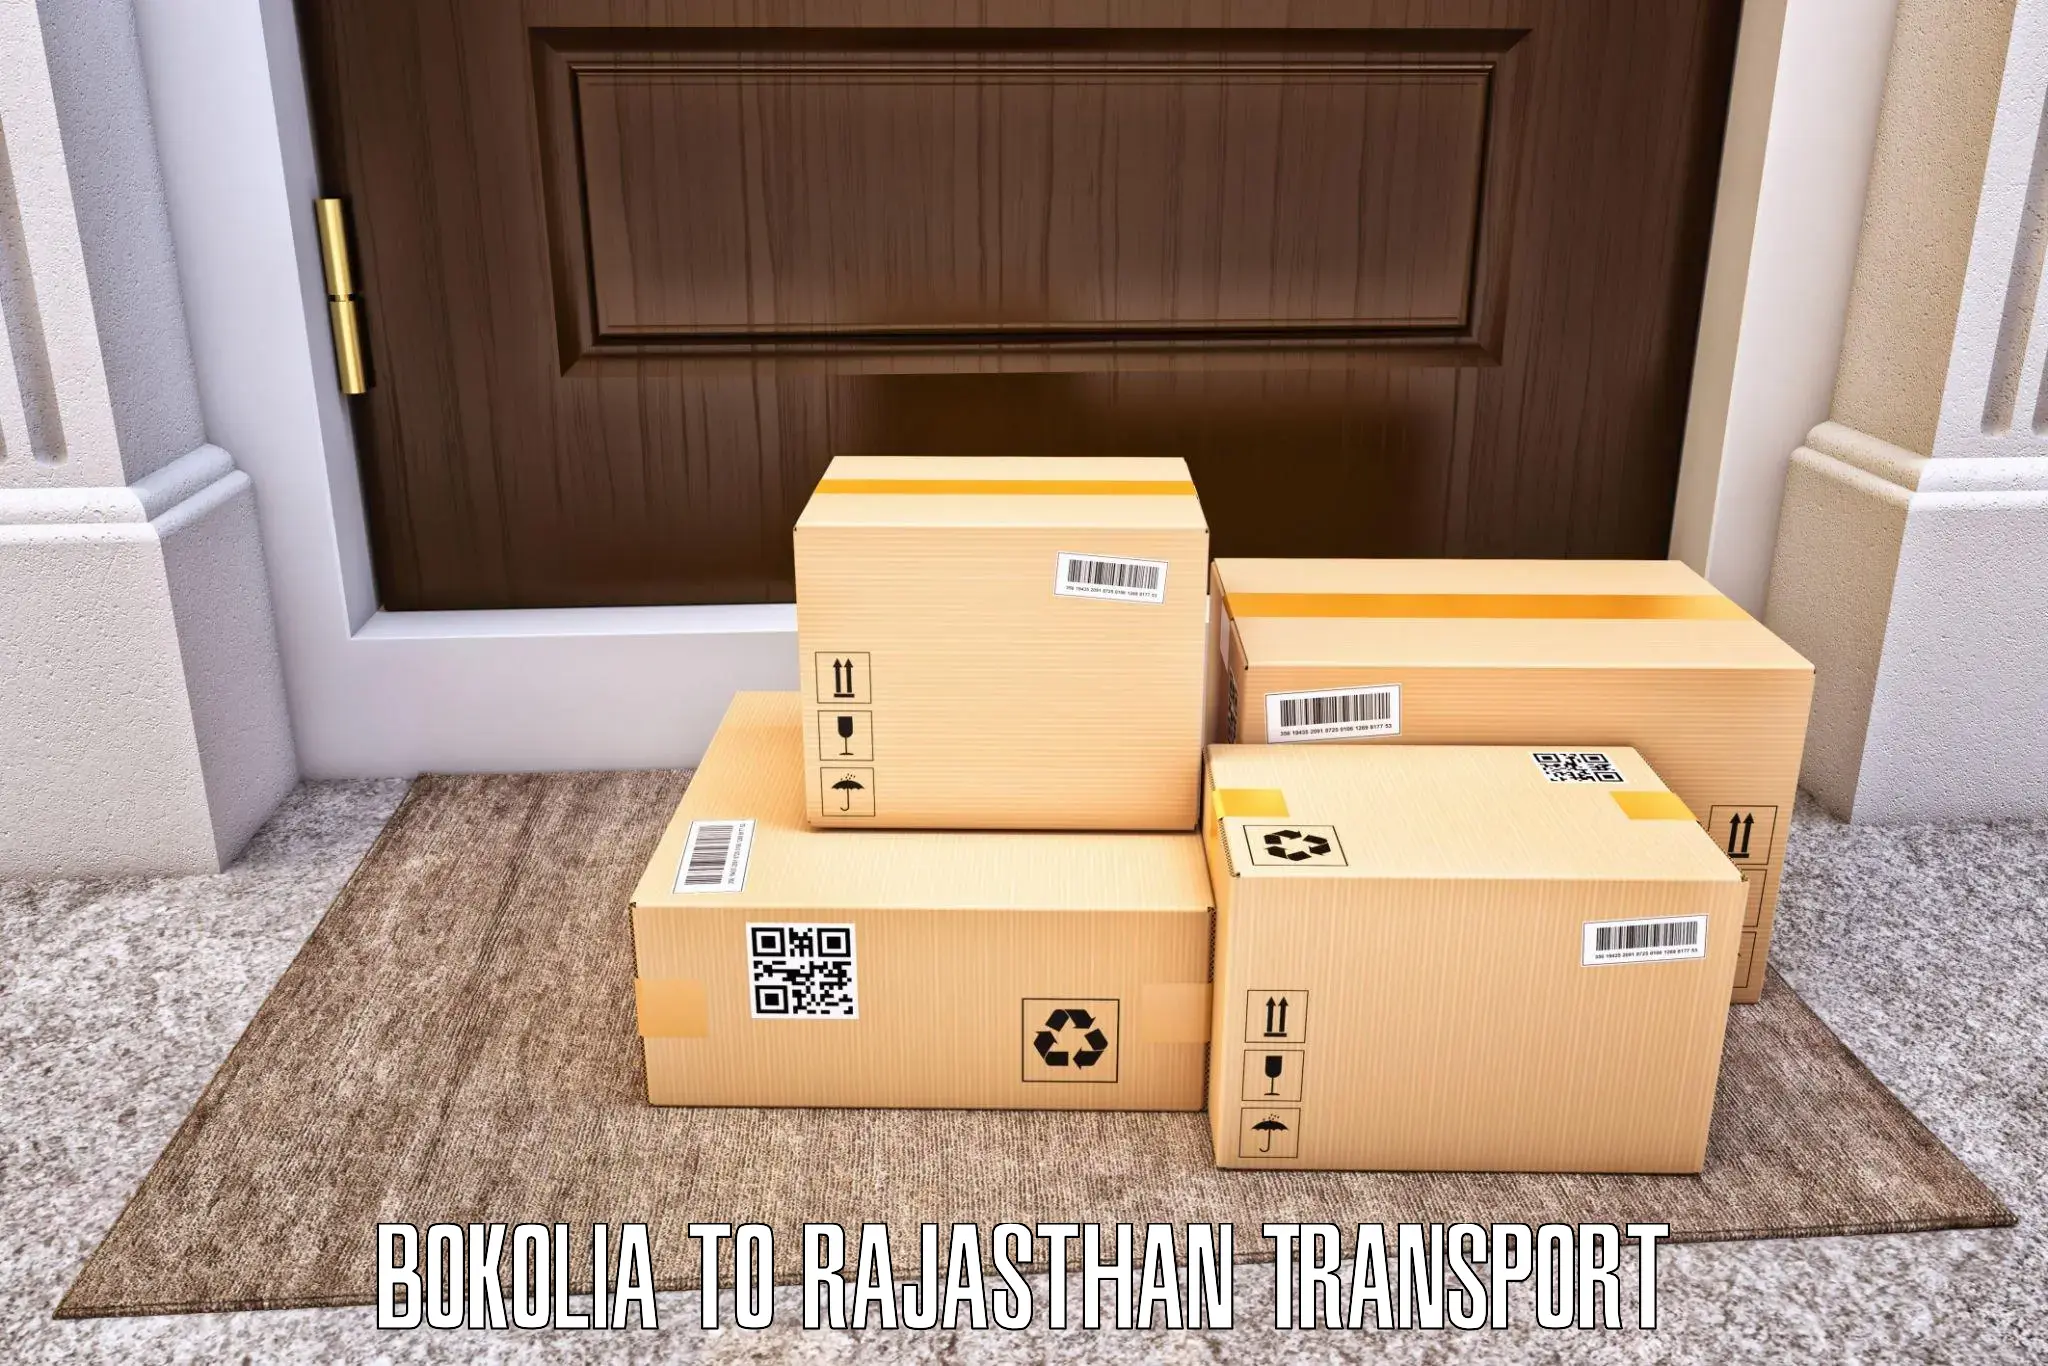 Shipping partner Bokolia to Bari Dholpur